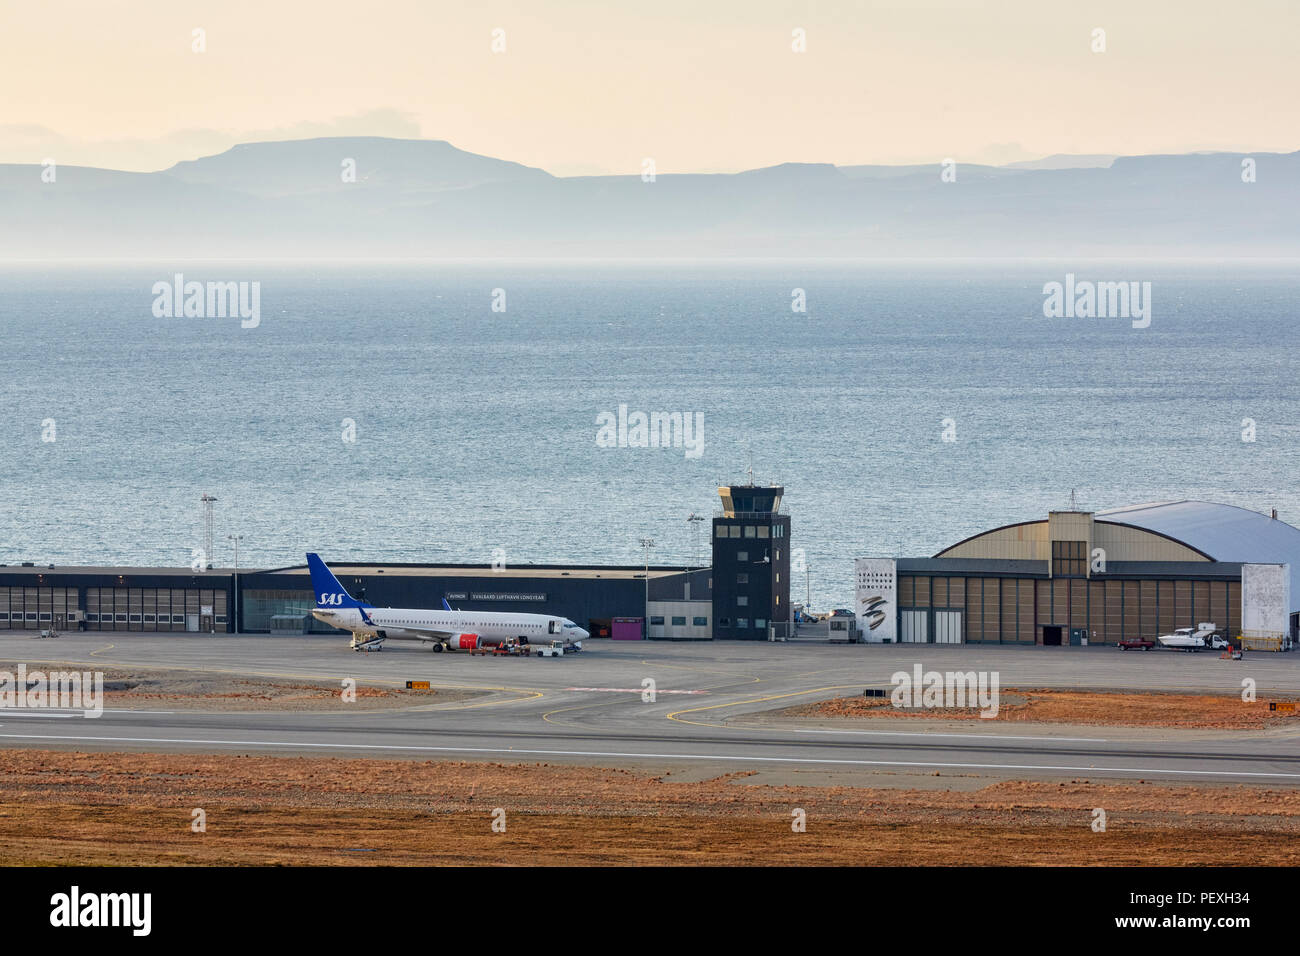 L'aéroport de Longyearbyen Longyearbyen Svalbard Lufthavn avec fjord derrière elle comme vu à partir d'une montagne à proximité Banque D'Images